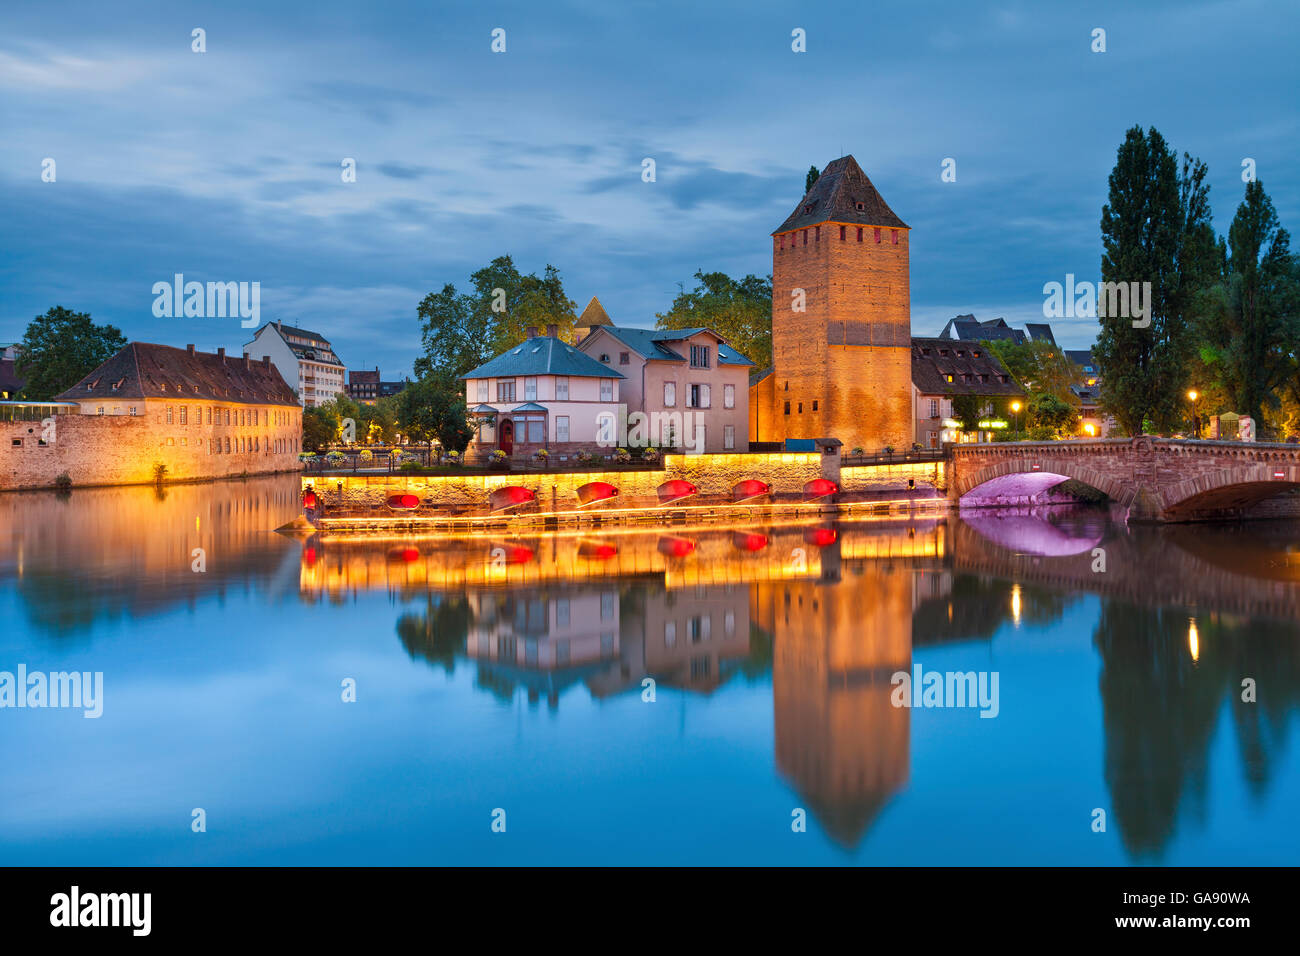 Strasbourg. image de vieille ville de strasbourg pendant le crépuscule heure bleue. Banque D'Images